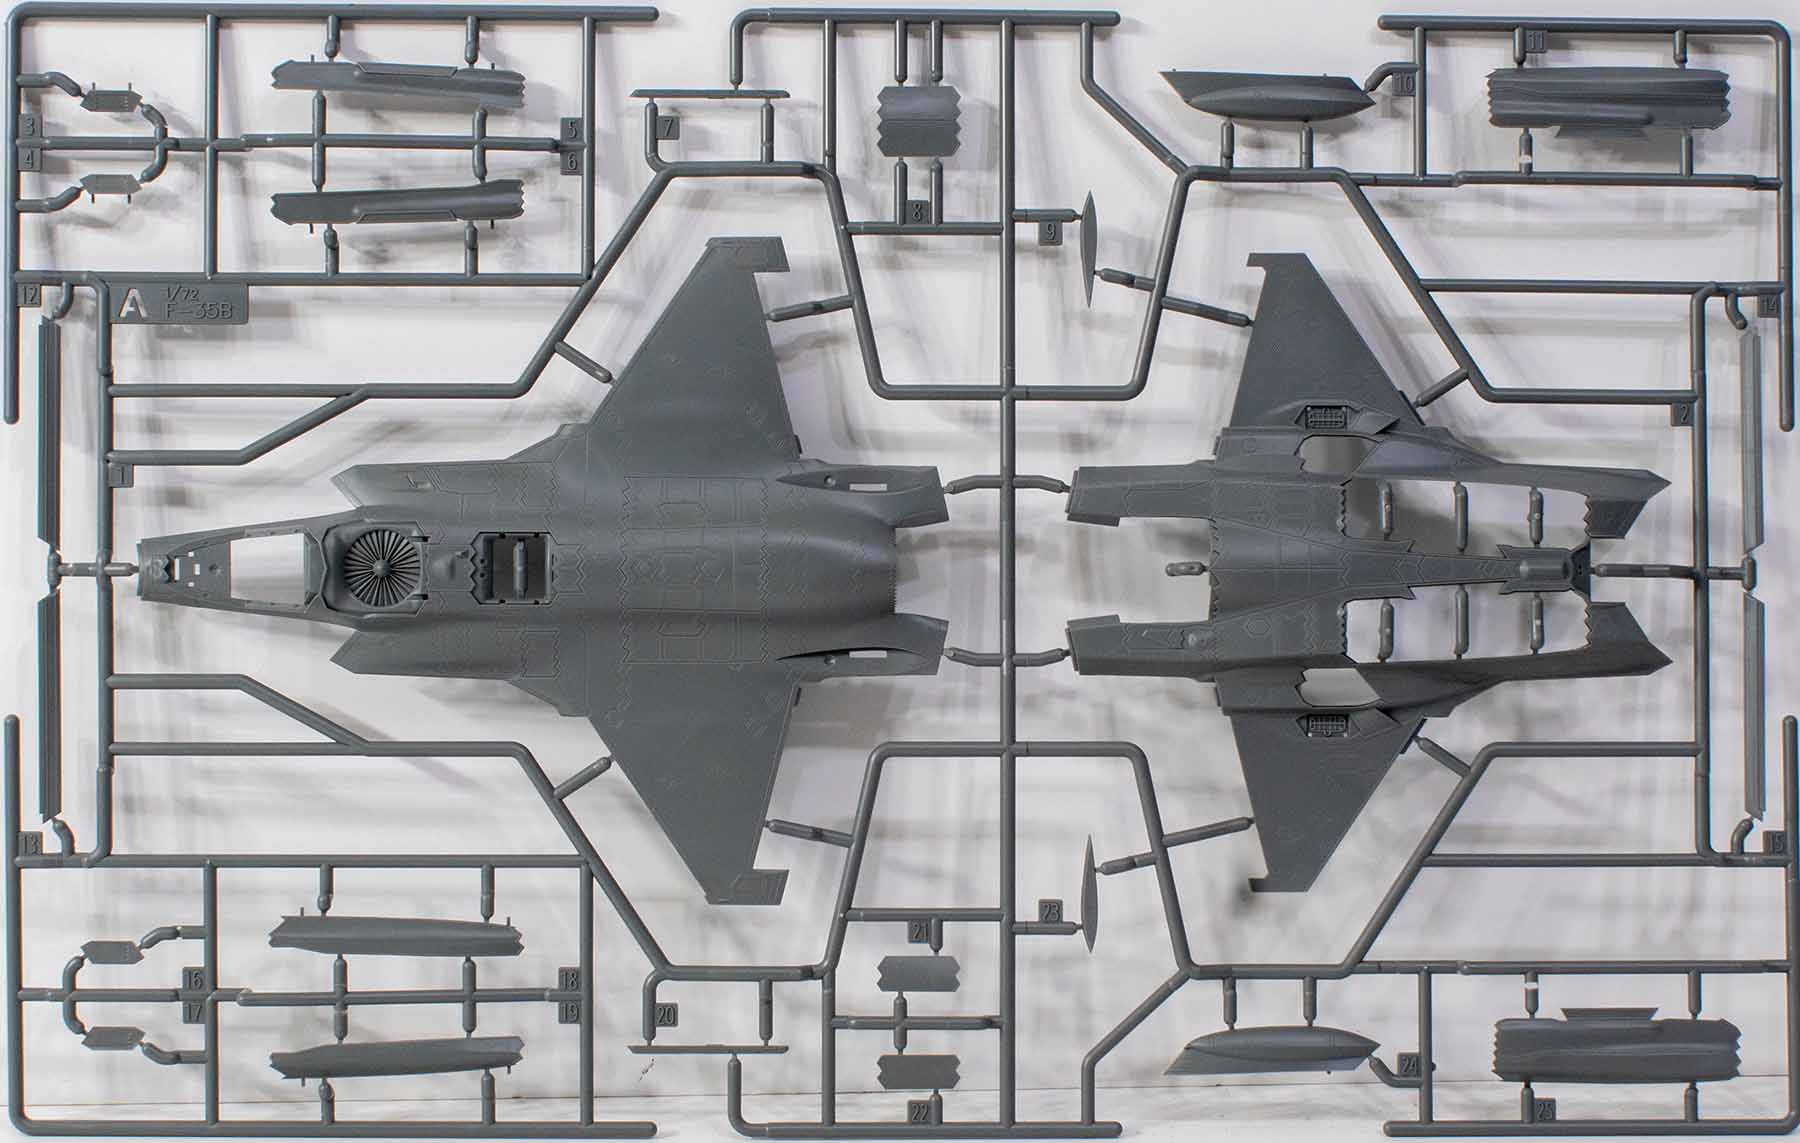 Academy USMC F-35B Detail